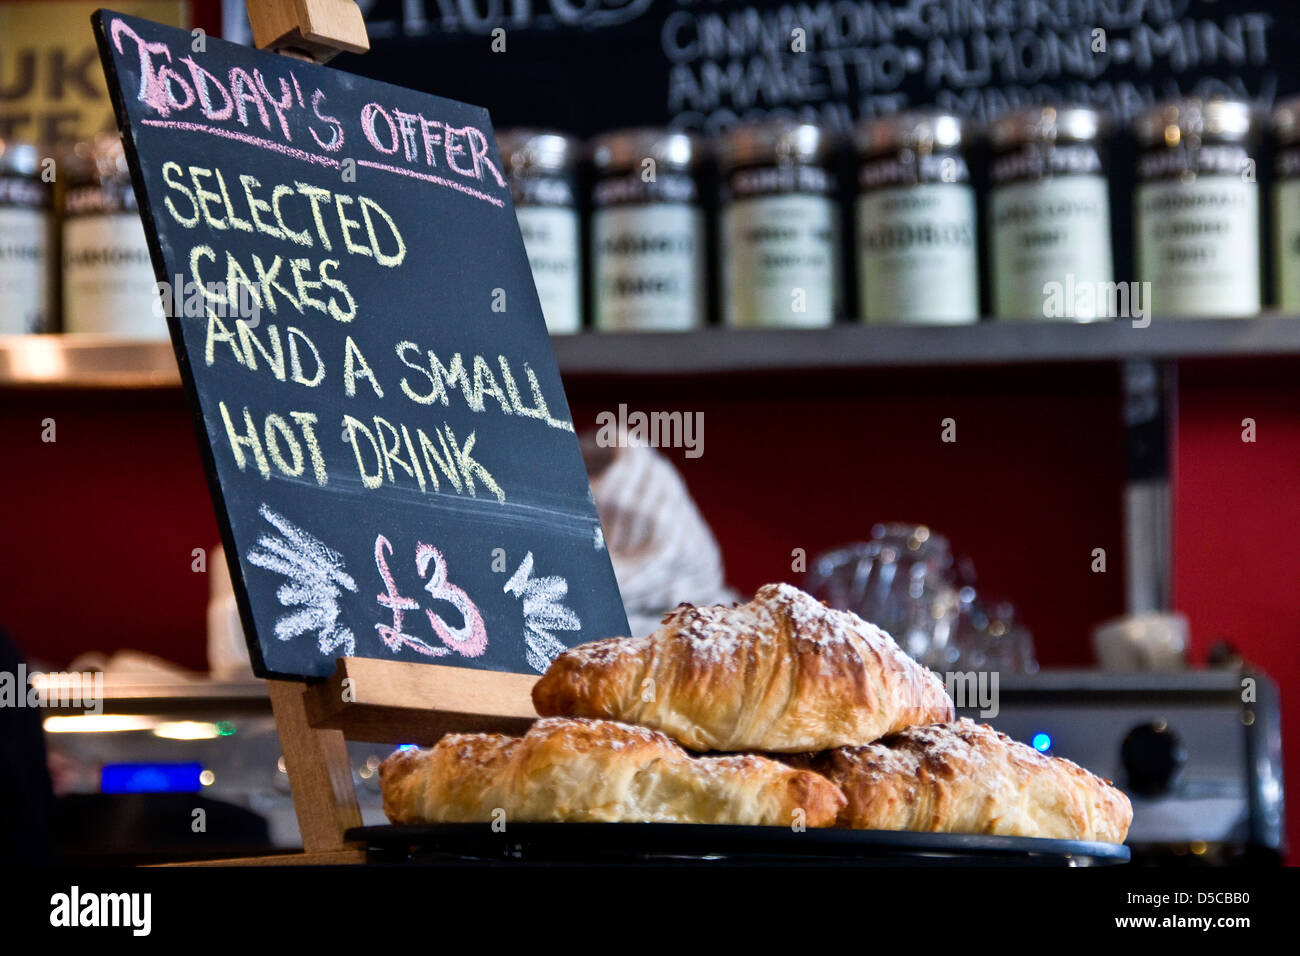 Ausgewählten Kuchen und einem kleinen Heißgetränk für £3 ist ein spezielles Angebot angezeigt innerhalb einer lokalen Coffee-Shop in Dundee, Großbritannien Stockfoto